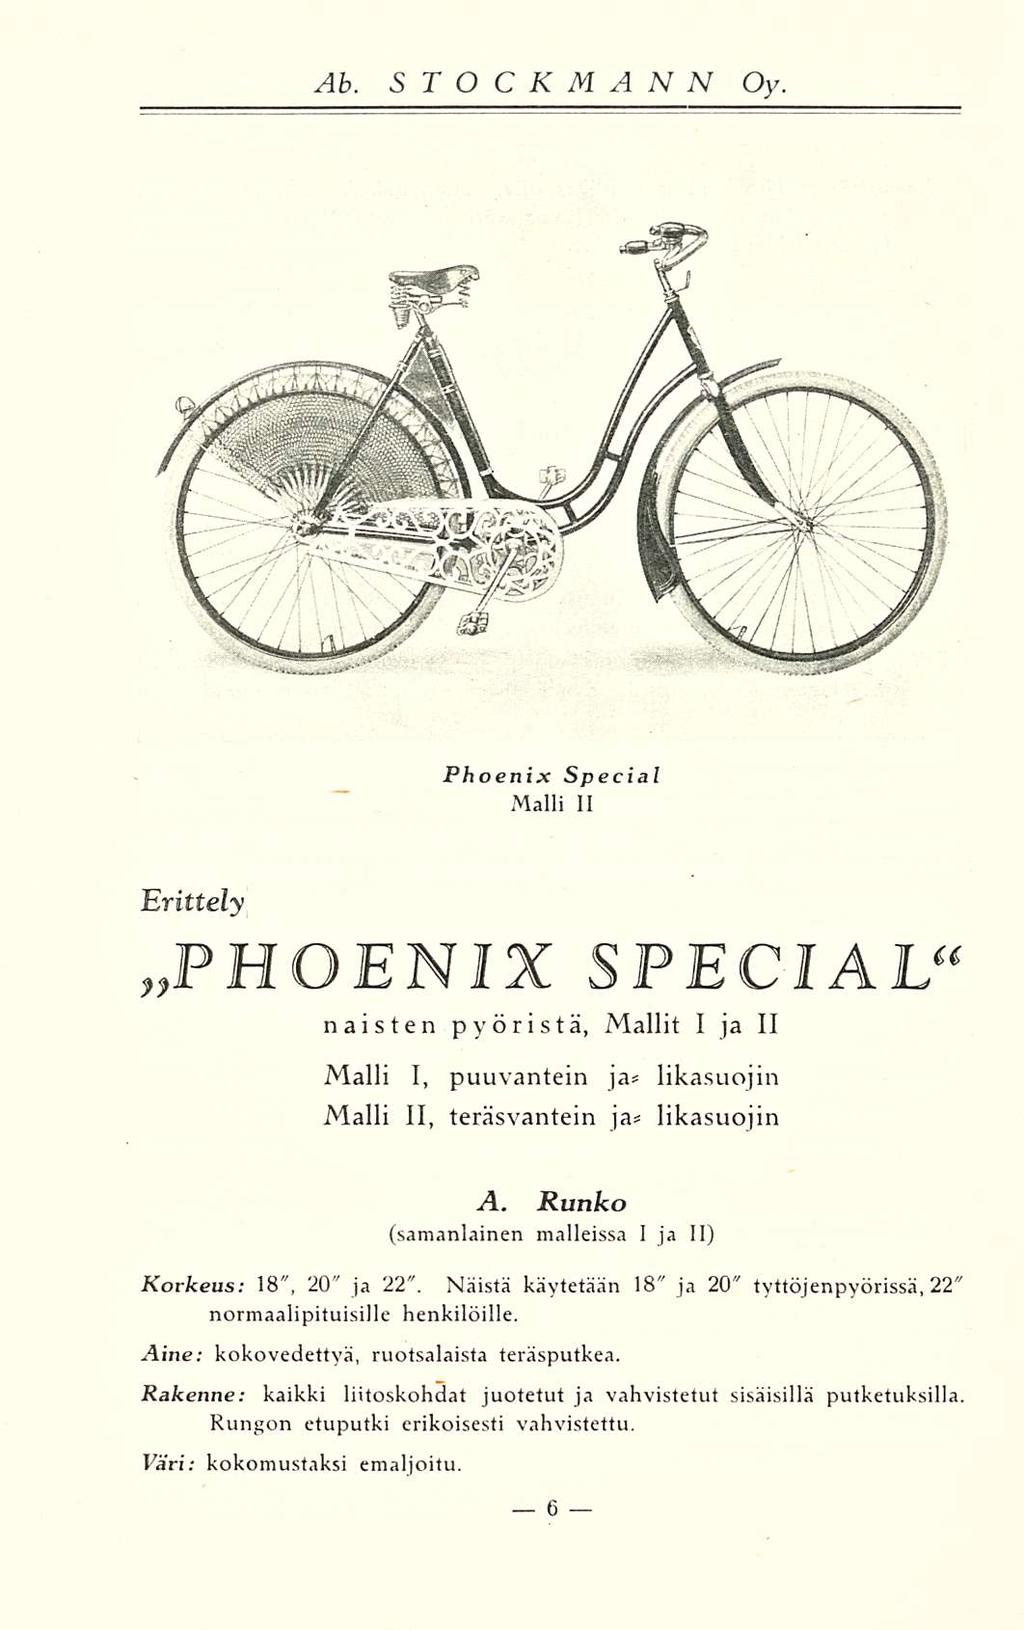 Phoenix Special Malli II Erittely»PHOENIX SPECIAL" naisten pyöristä, Mallit I ja II Malli I, puuvantein ja* likasuojin Malli 11, teräsvantein ja* likasuojin A.